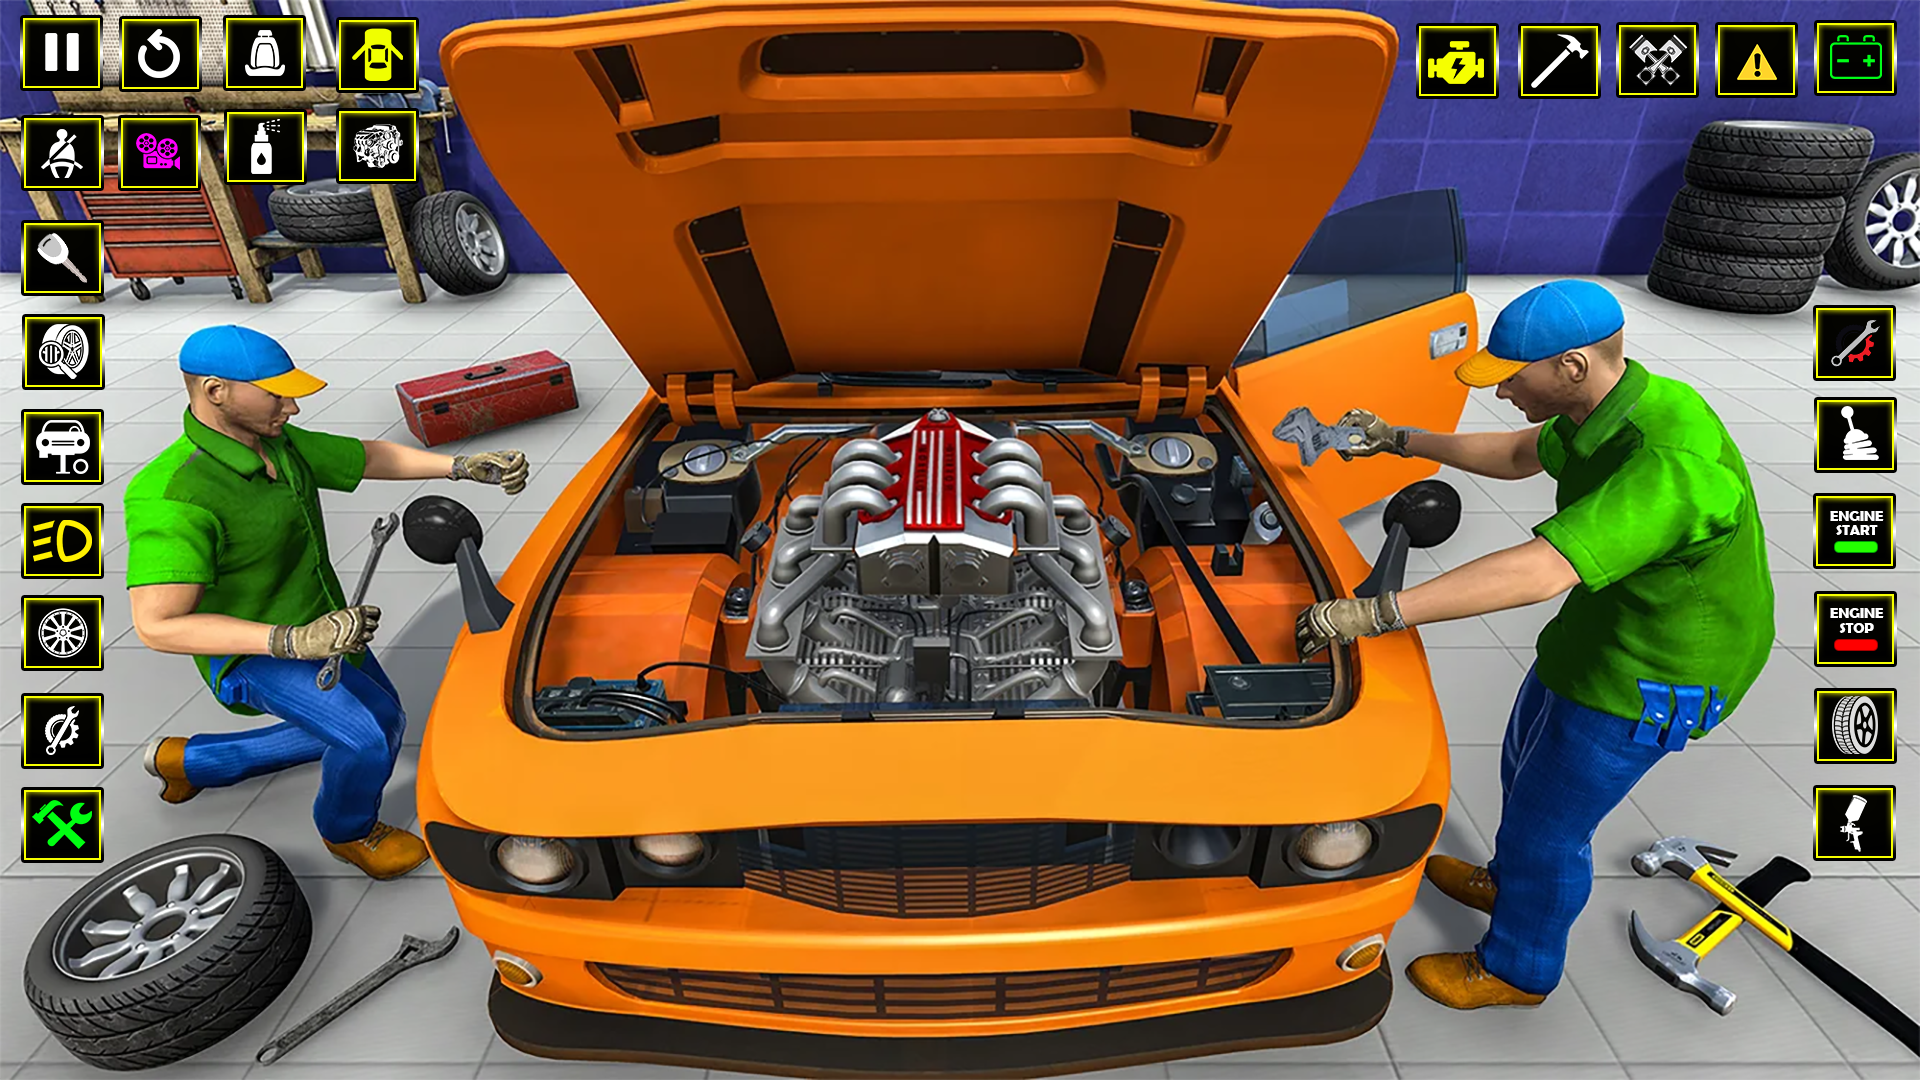 Screenshot 1 of Trò chơi mô phỏng cơ khí ô tô 3D 1.0.20